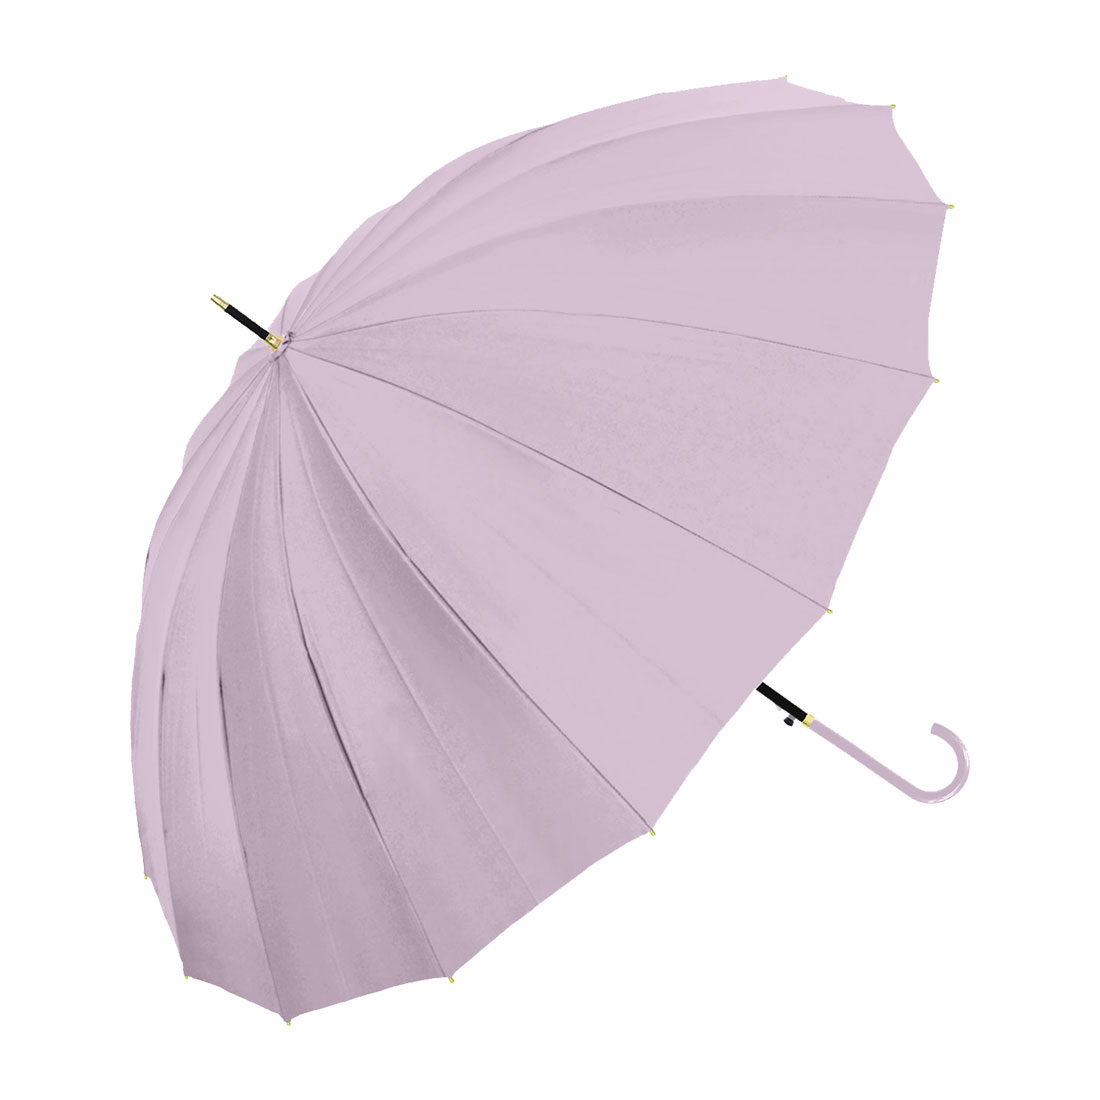 傘 レディース 16本骨 長傘 雨傘 おしゃれ かわいい 無地 上品 かさ 女性 シンプル 和風 丈夫 耐風 ジャンプ式 55cm メンズ 折れにくい  風に強い 合皮持ち手